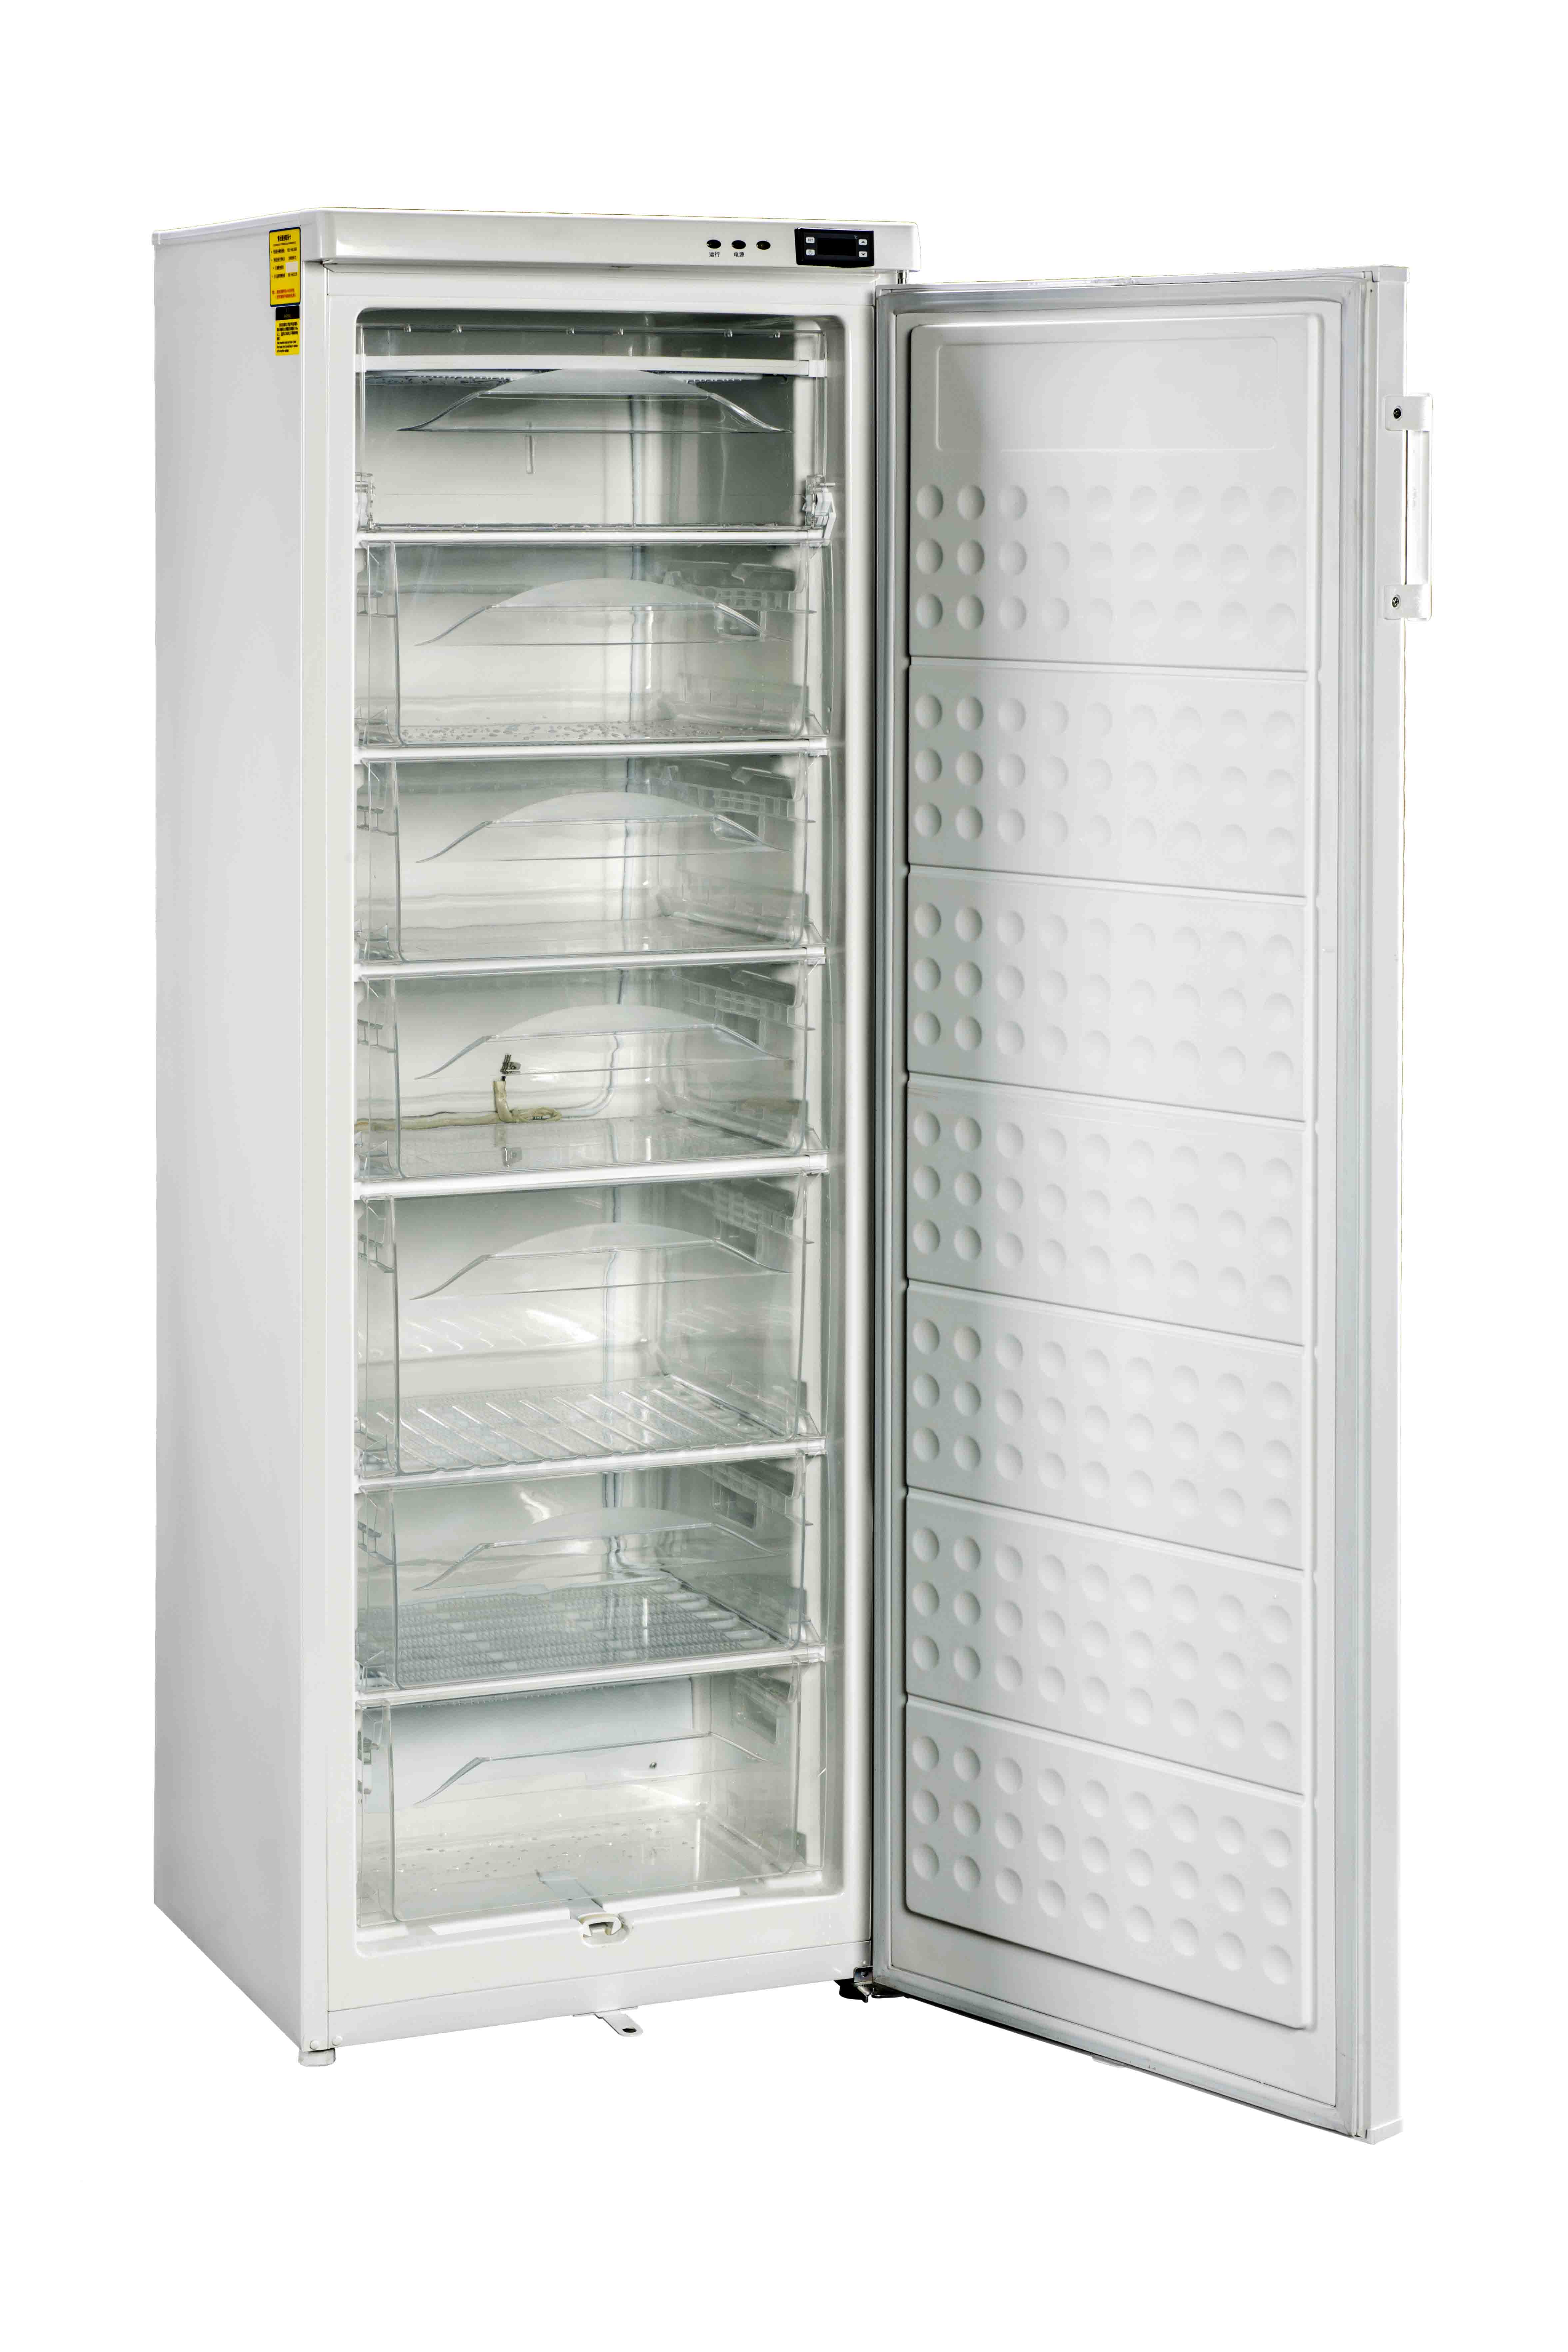 Pozis холодильник температура. Медицинский холодильник lk250. Холодильник медицинский pr500. Вертикальный низкотемпературный морозильник Innova u360. Морозильник медицинский низкотемпературный ММН-200 Pozis.